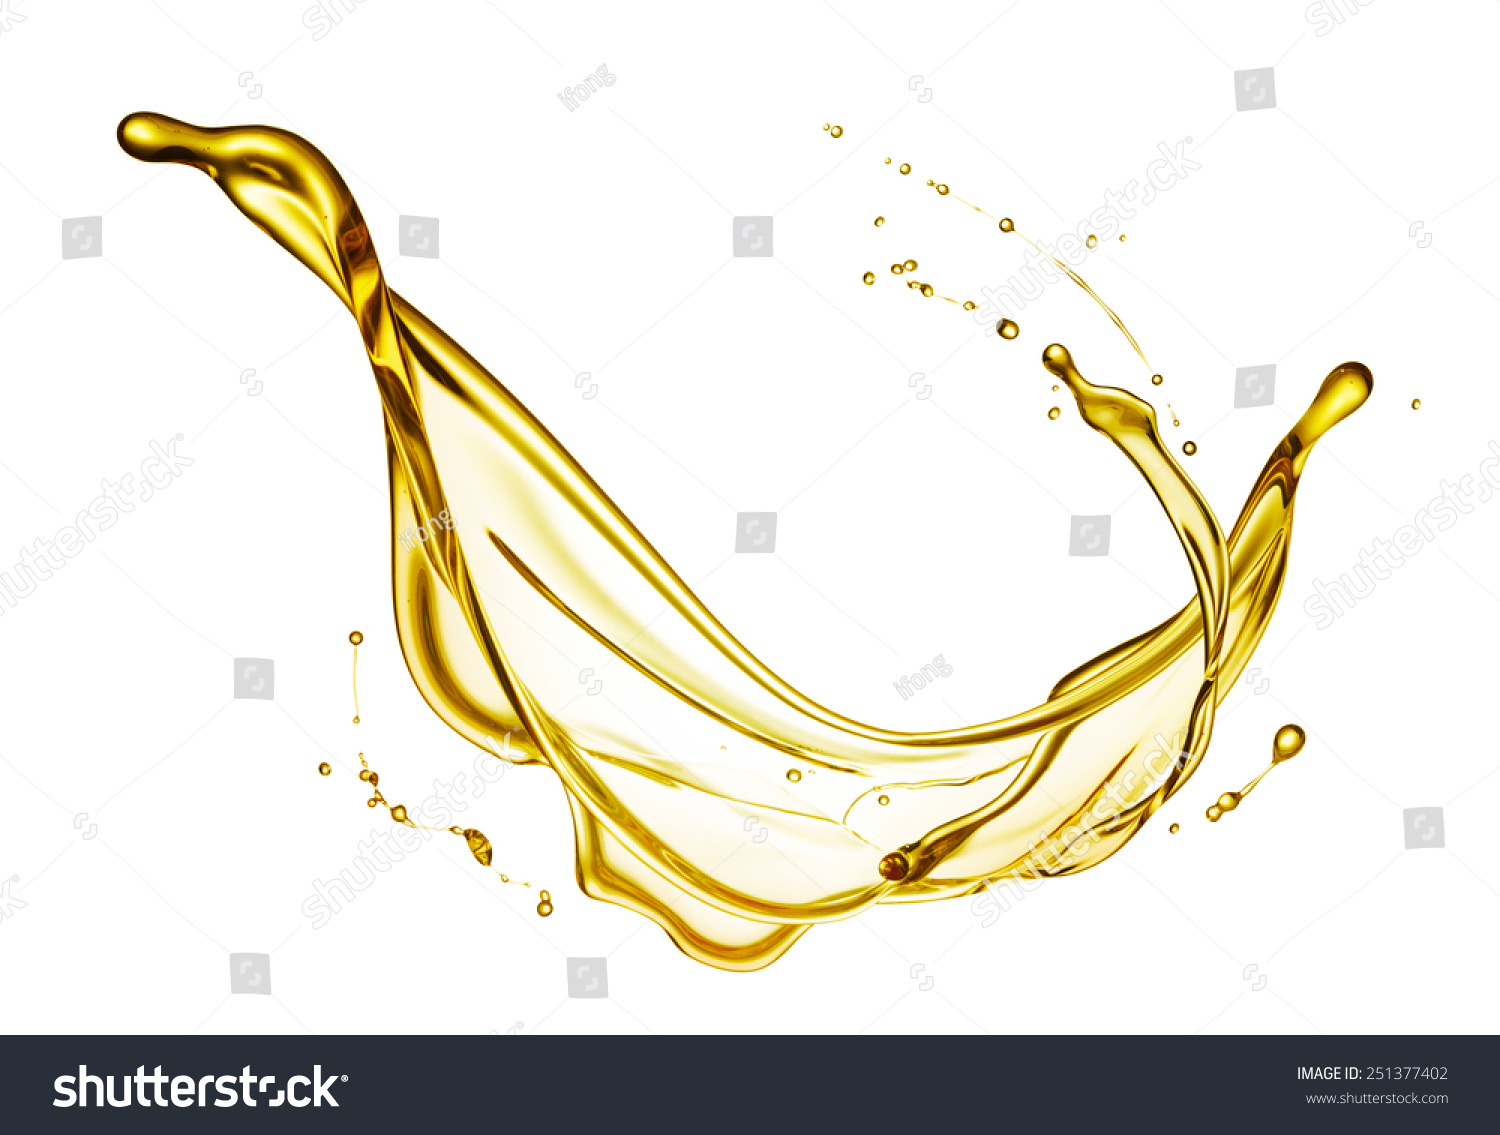 olive oil splashing isolated on white background #251377402